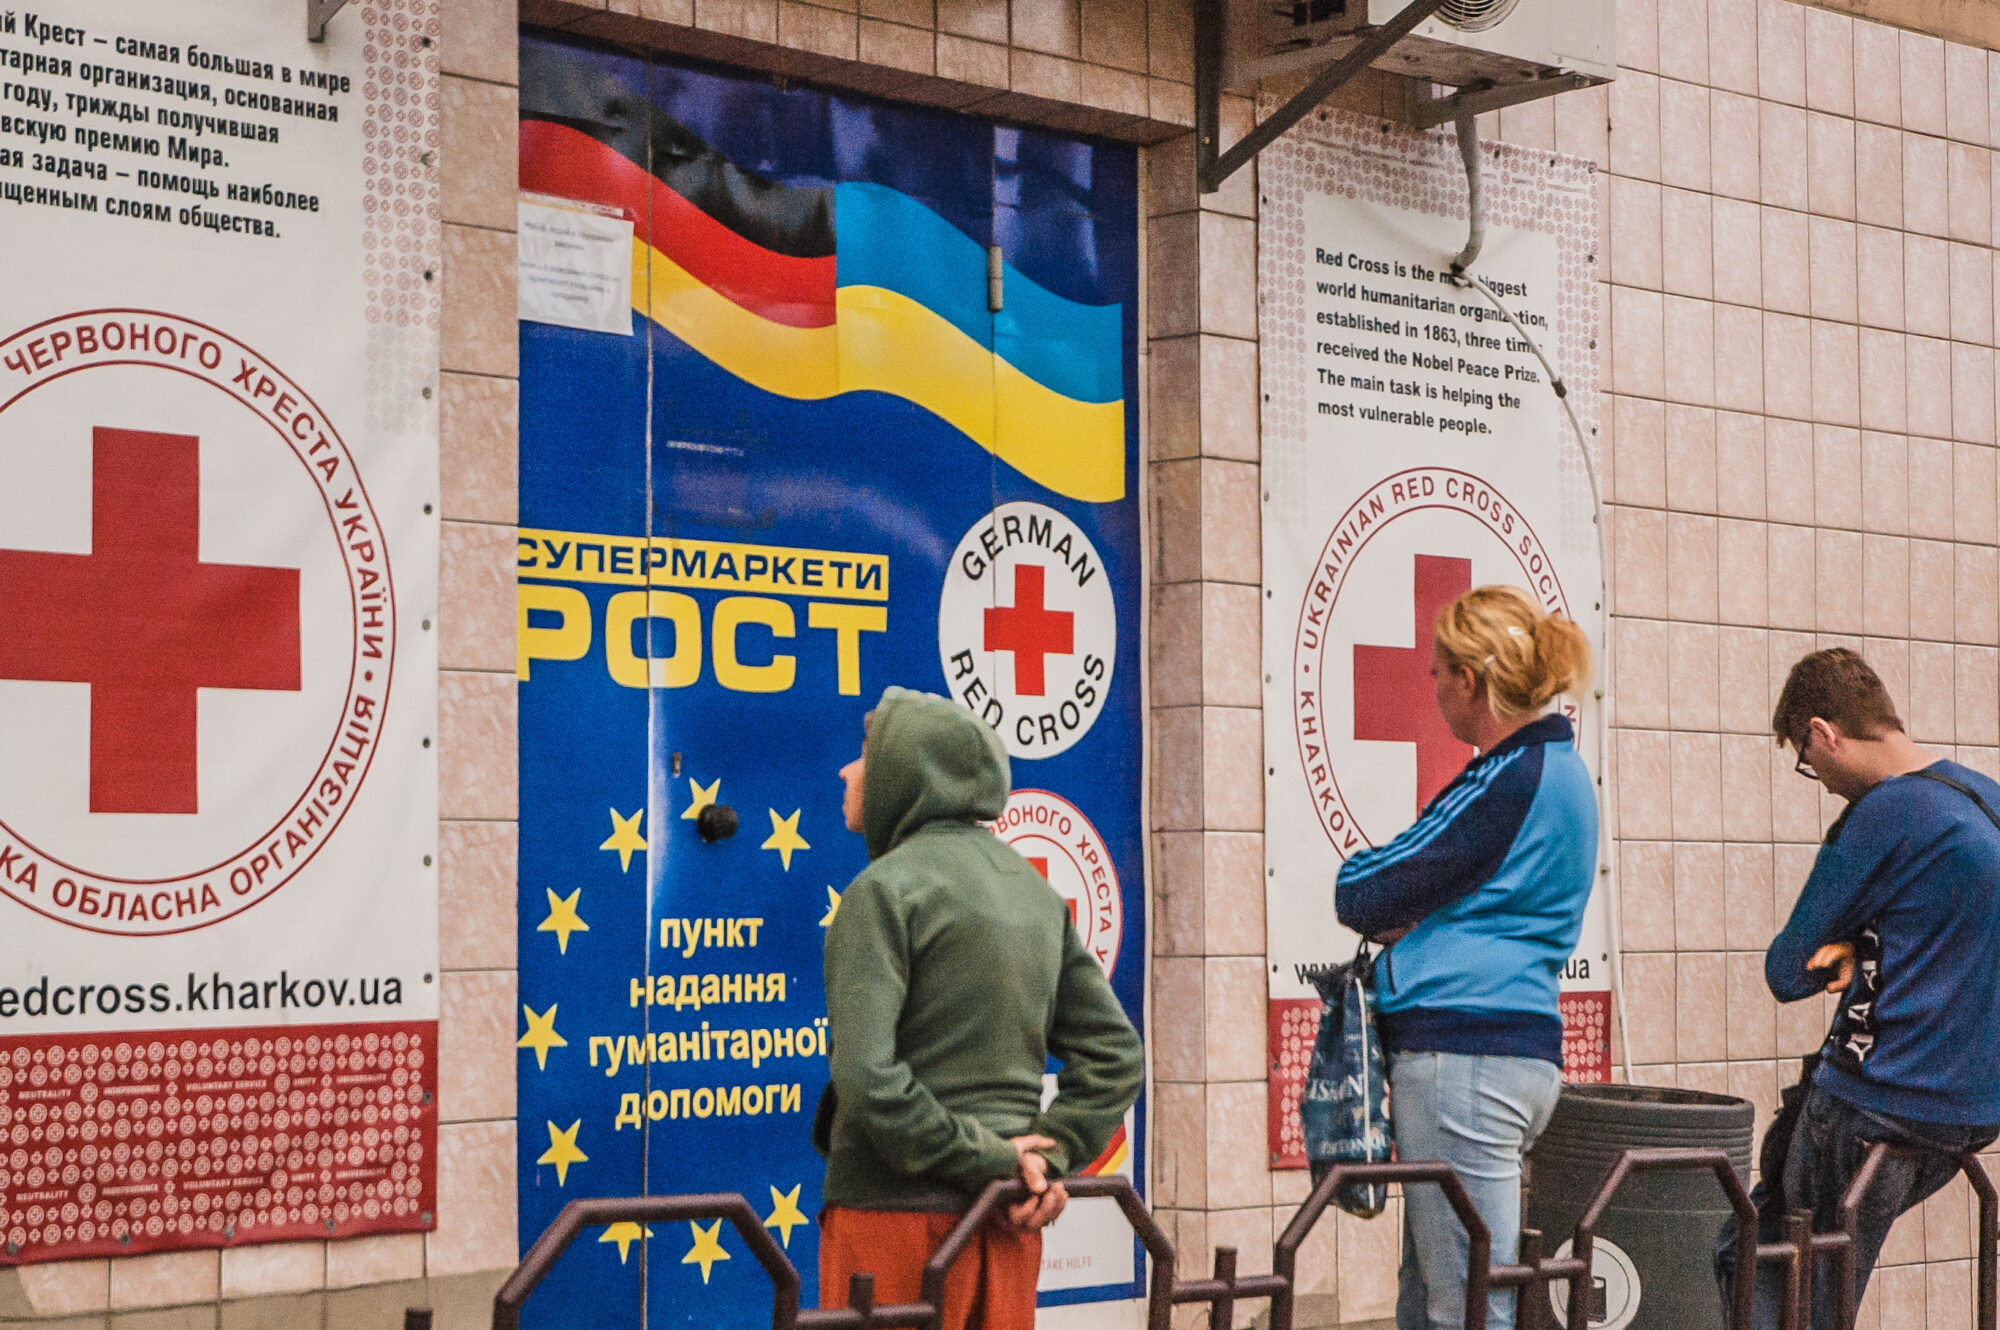 Харківська обласна організація Червоного Хреста України у супермаркеті “Рост”